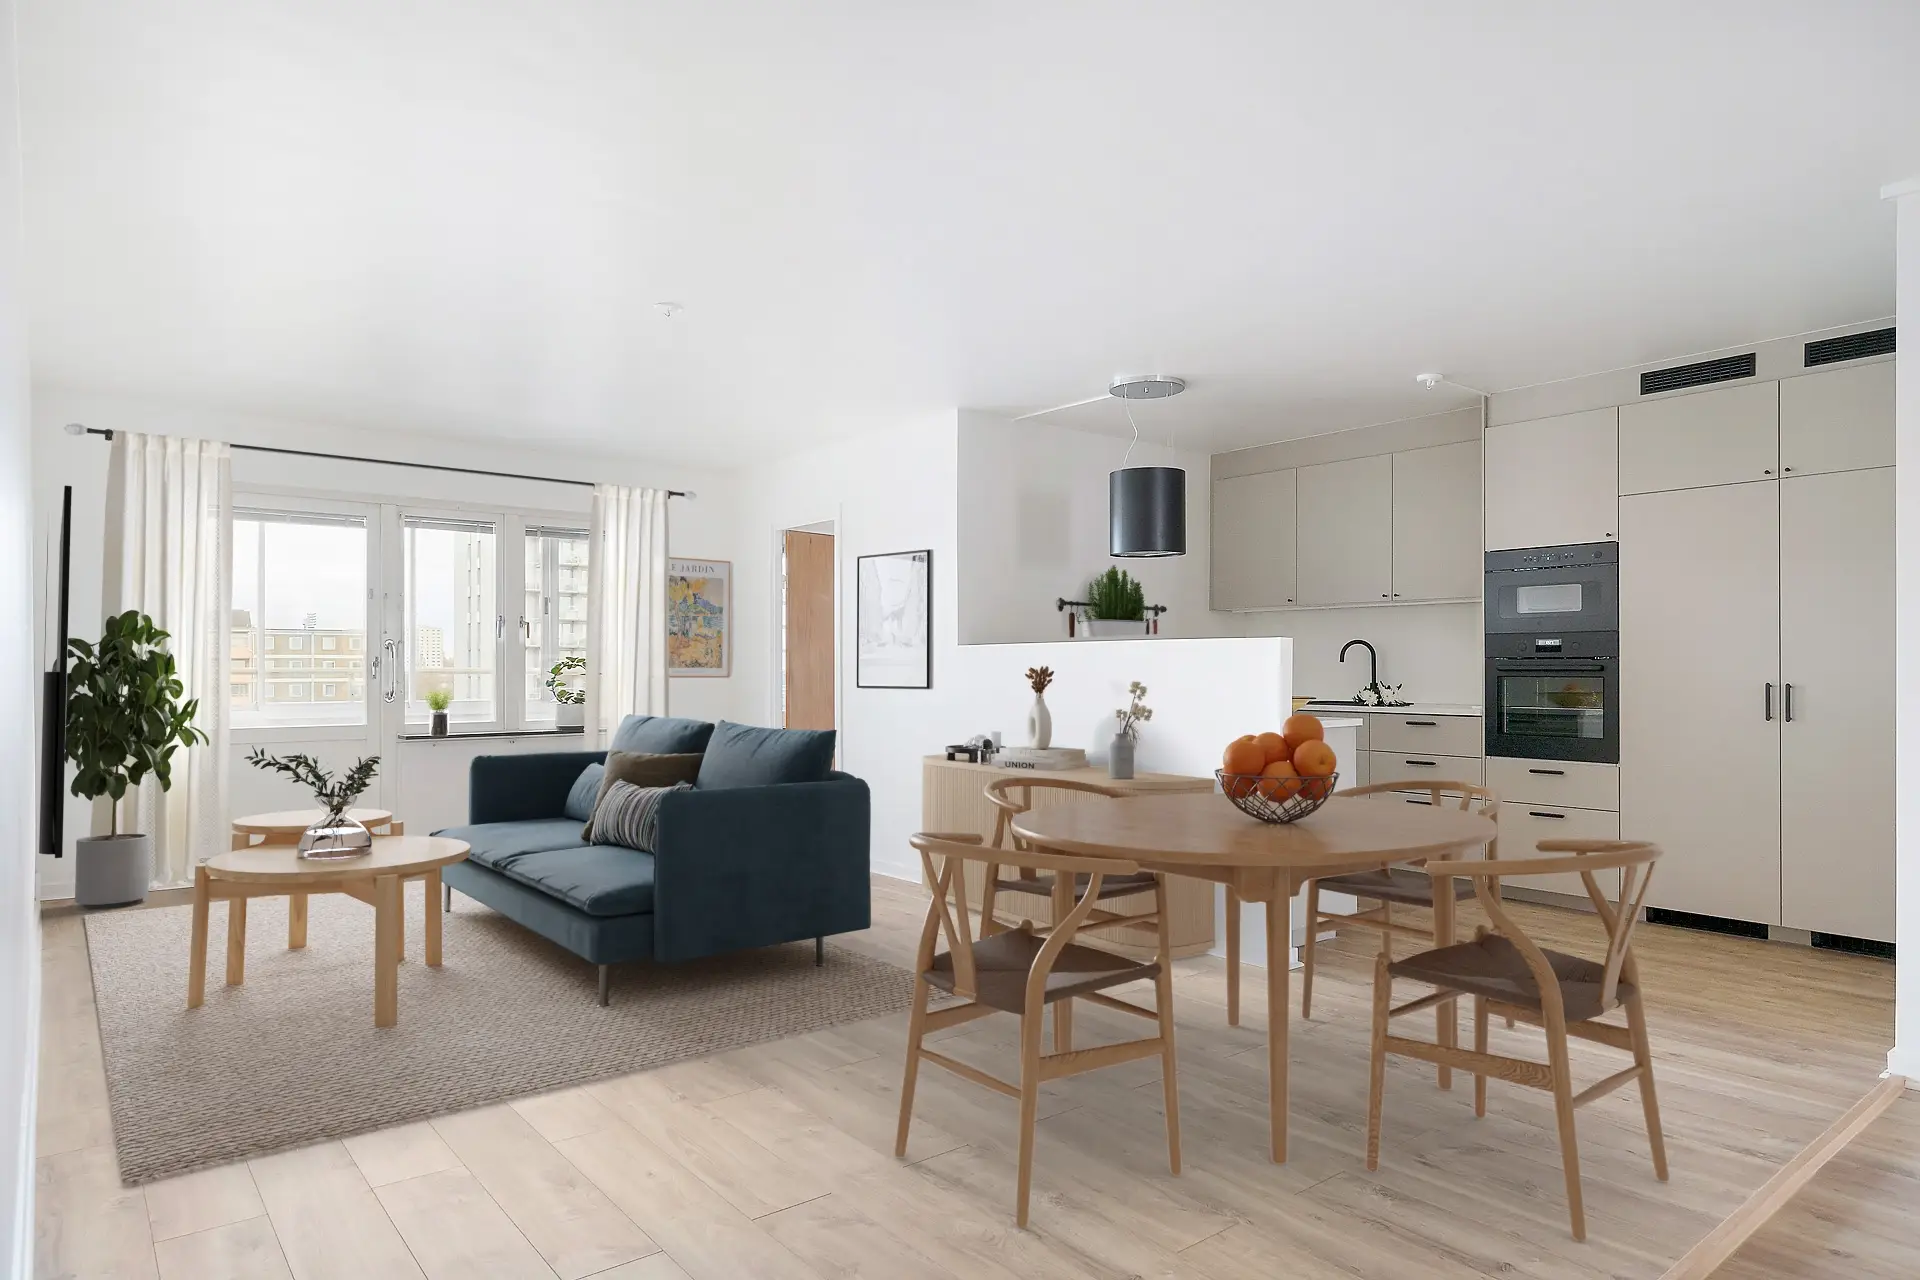 En lägenhet med ett vardagsrum i öppen planlösning med en blå soffa och ett soffbord i trä, en matplats med ett träbord och stolar samt ett snyggt kök i bakgrunden.